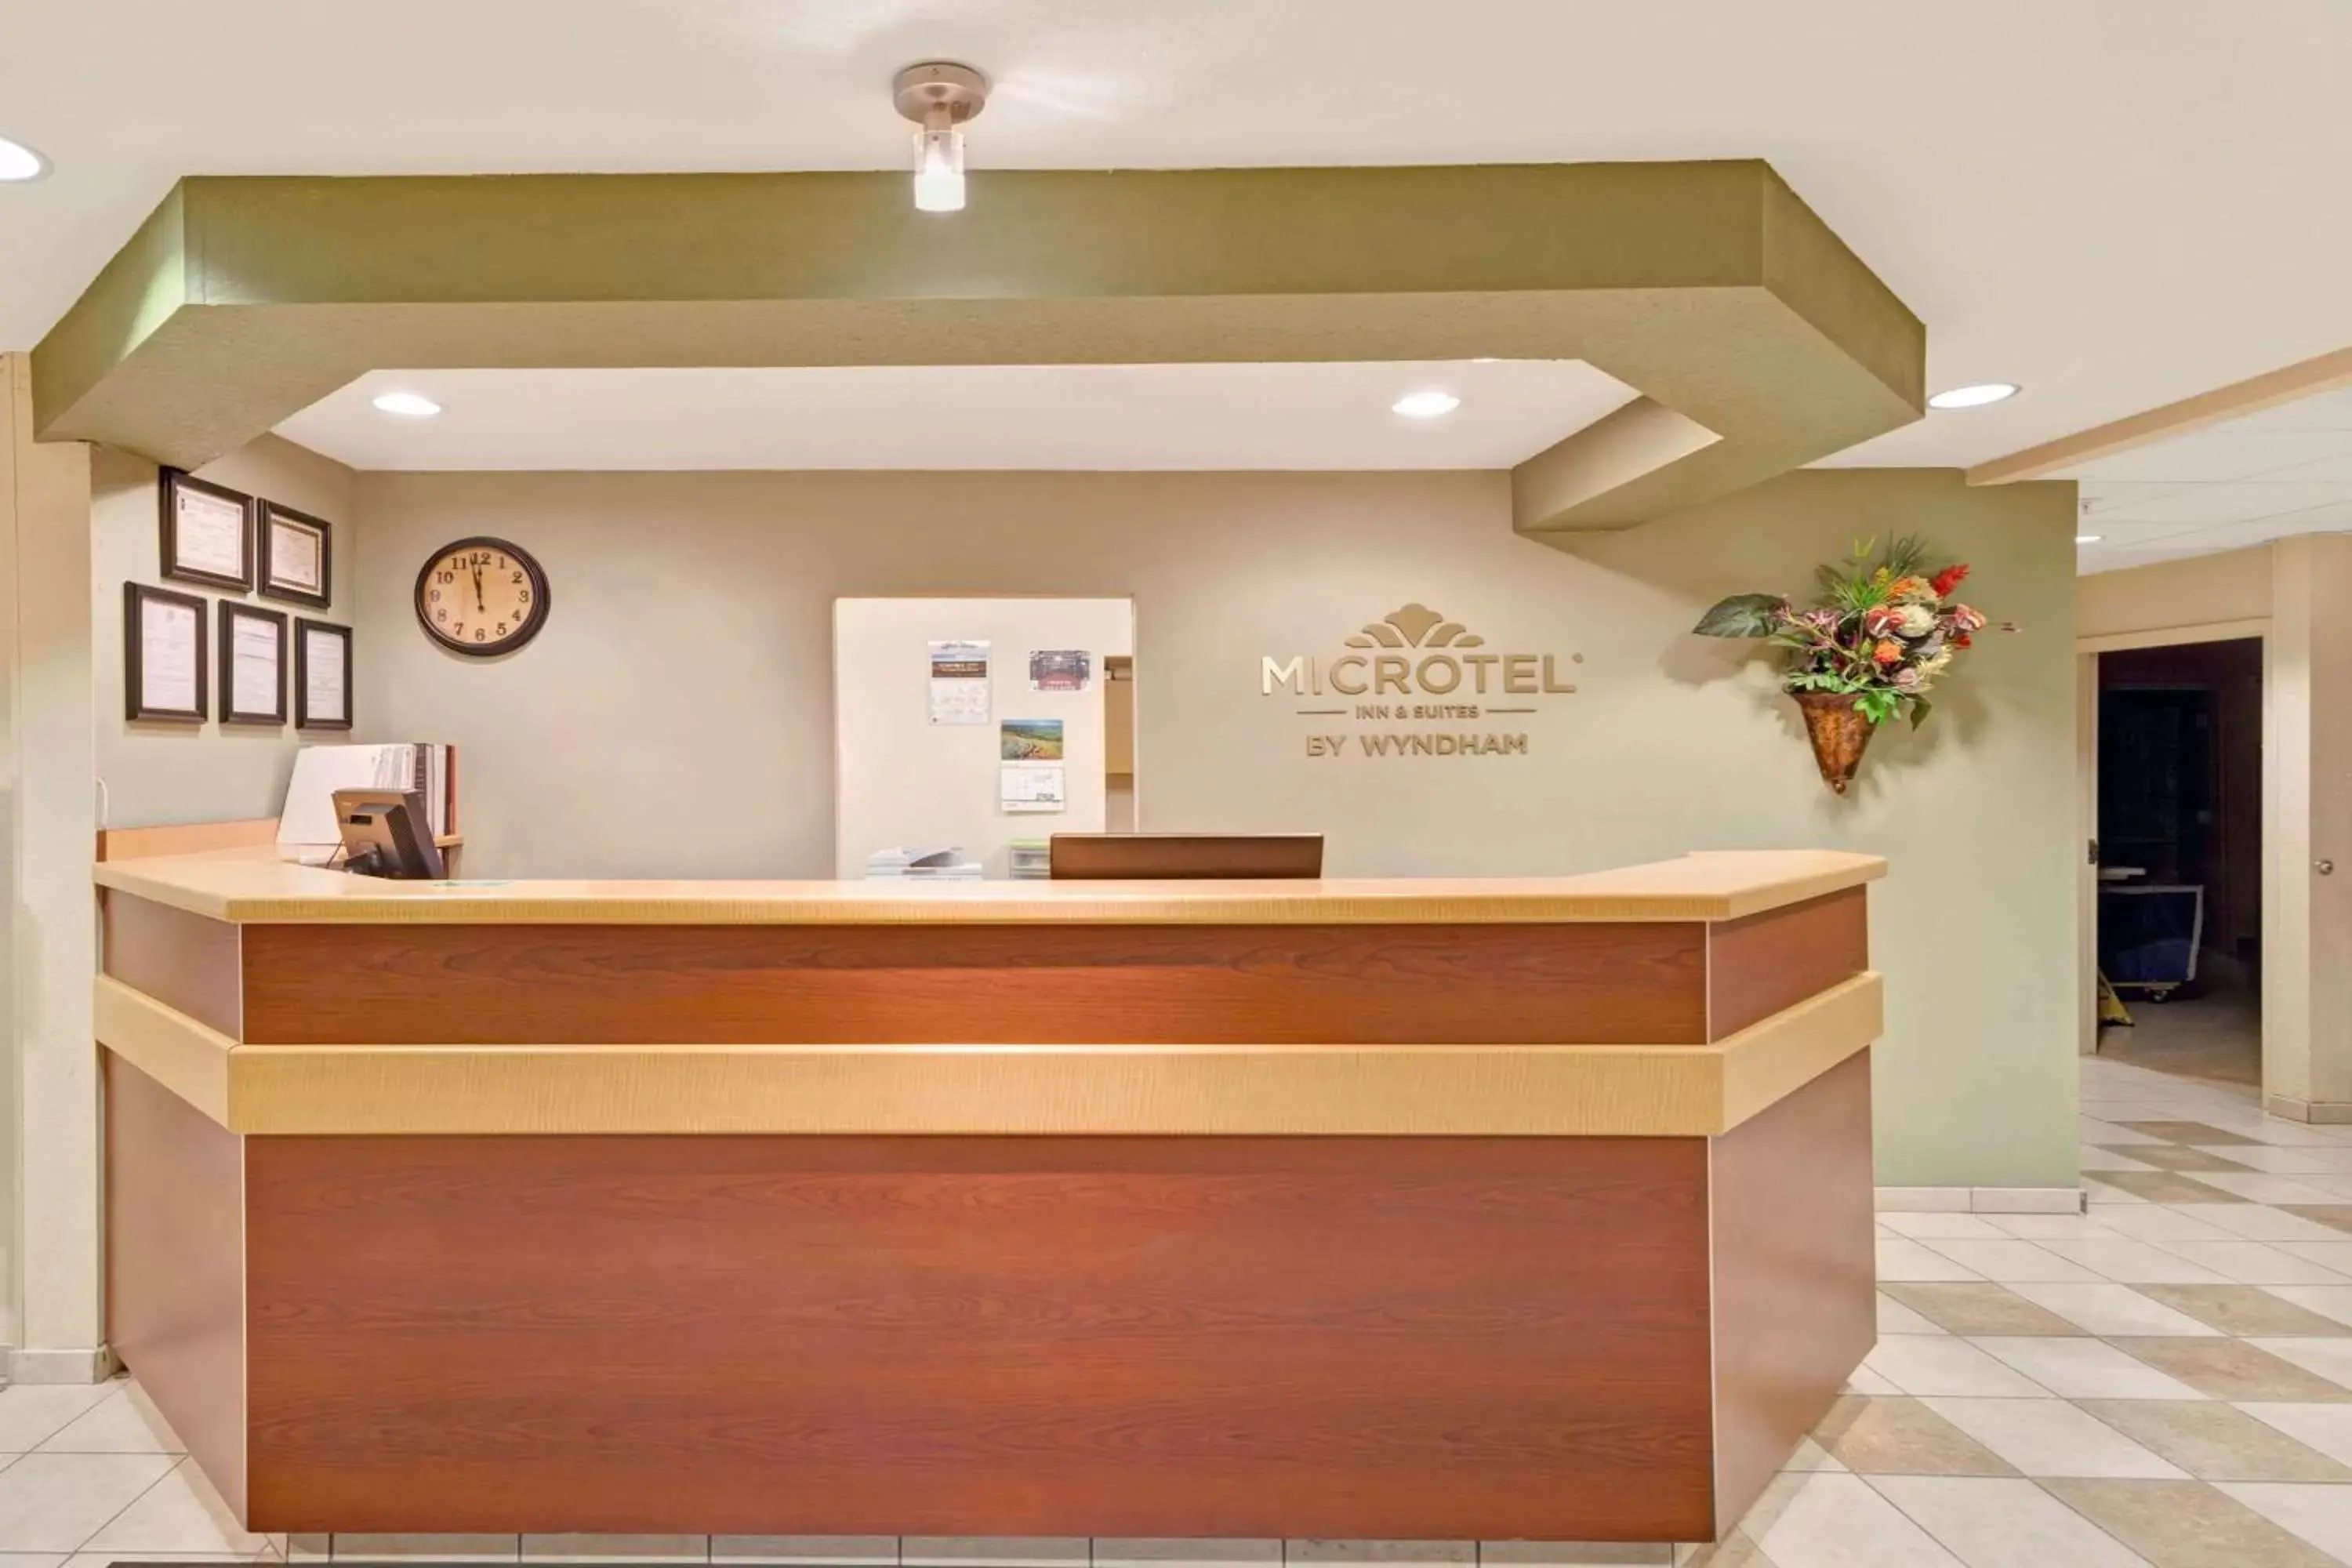 Lobby or reception, Lobby/Reception in Microtel Inn & Suites by Wyndham Jasper